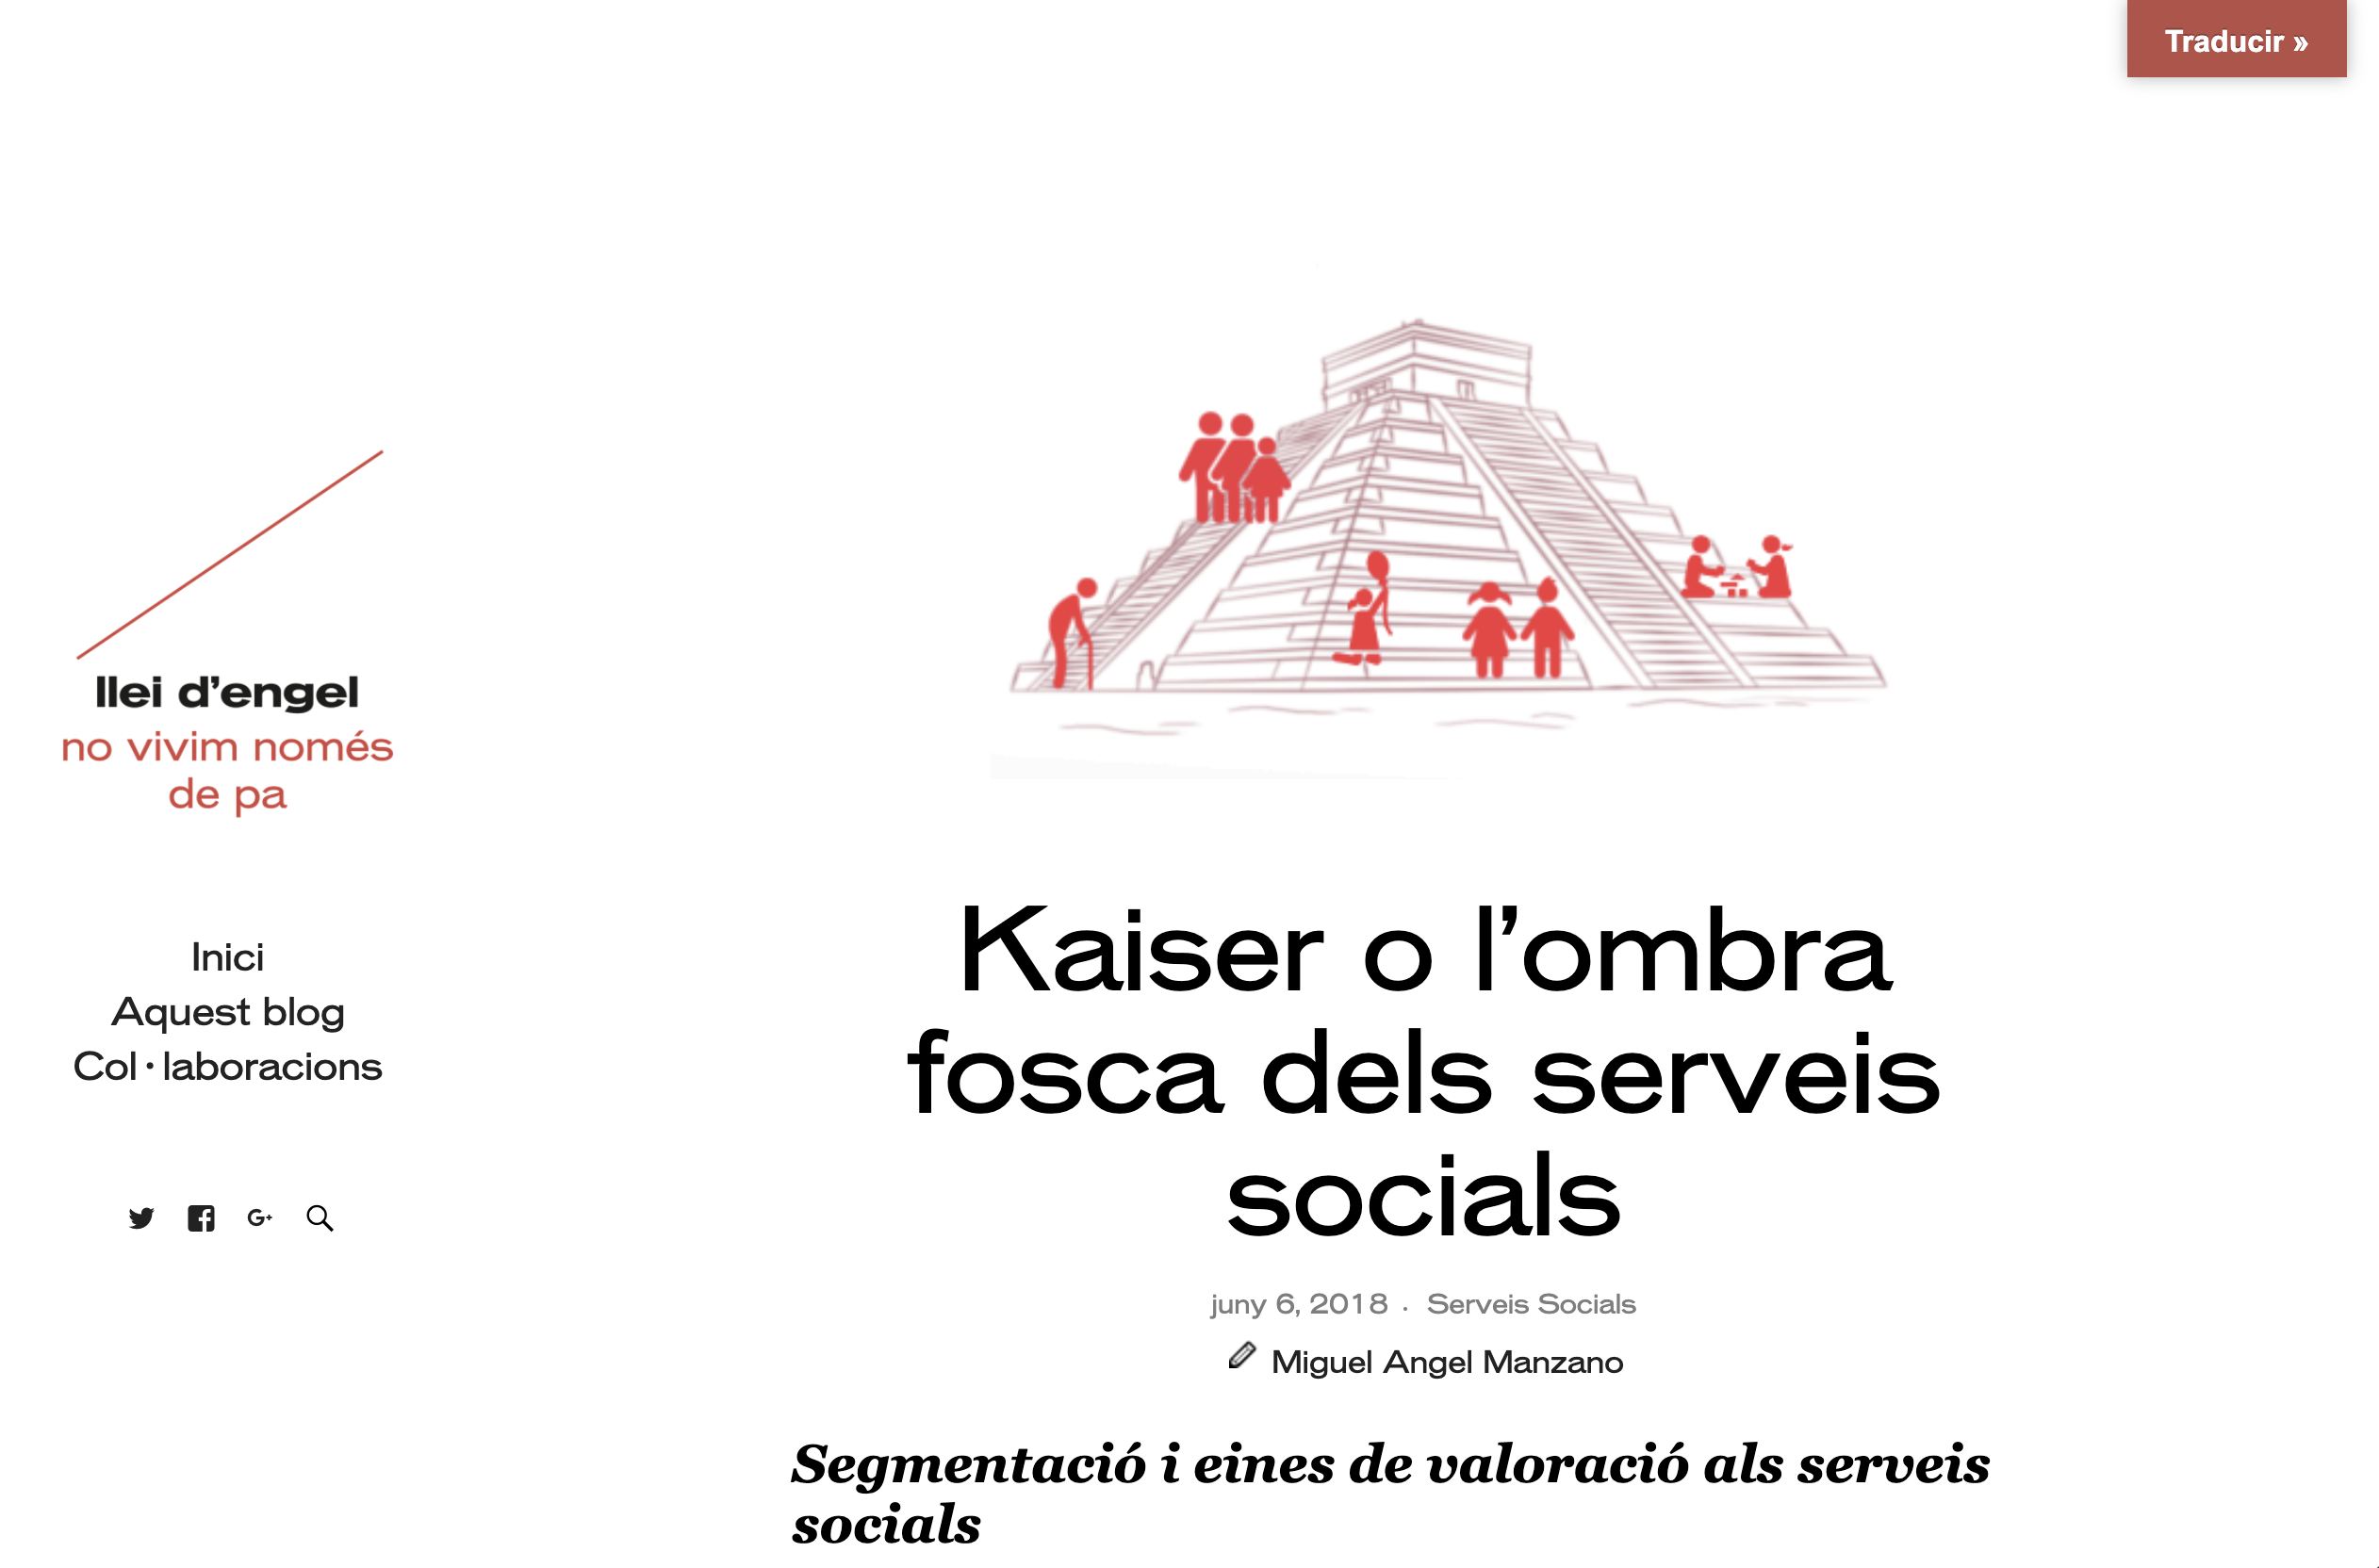 Manzano, M.A., Kaiser o l'ombra fosca dels Serveis Socials, Barcelona 2018